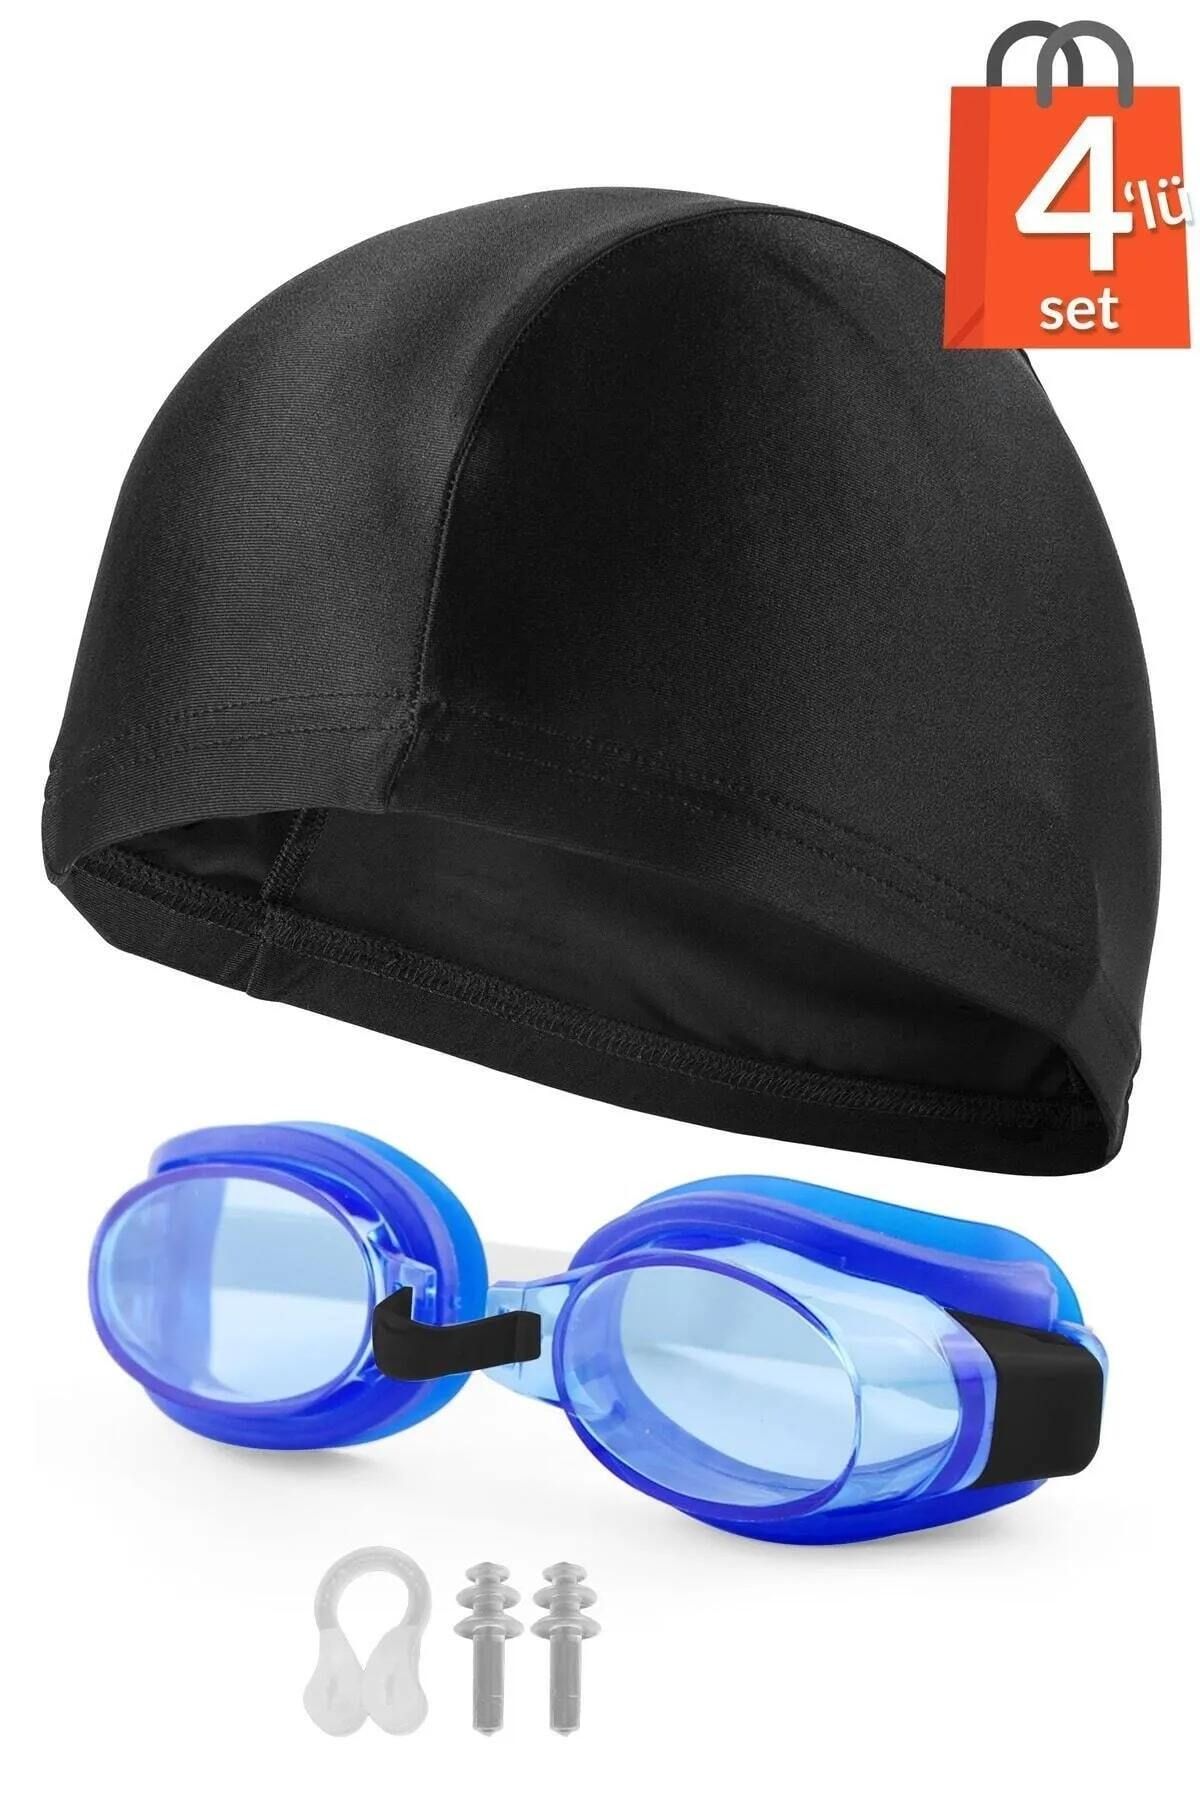 Ozsport 4lü Set Yüzücü Gözlüğü Kumaş Bone Kulak Ve Burun Tıkaçlı Set Yüzme Havuz Deniz Gözlüğü Mavi